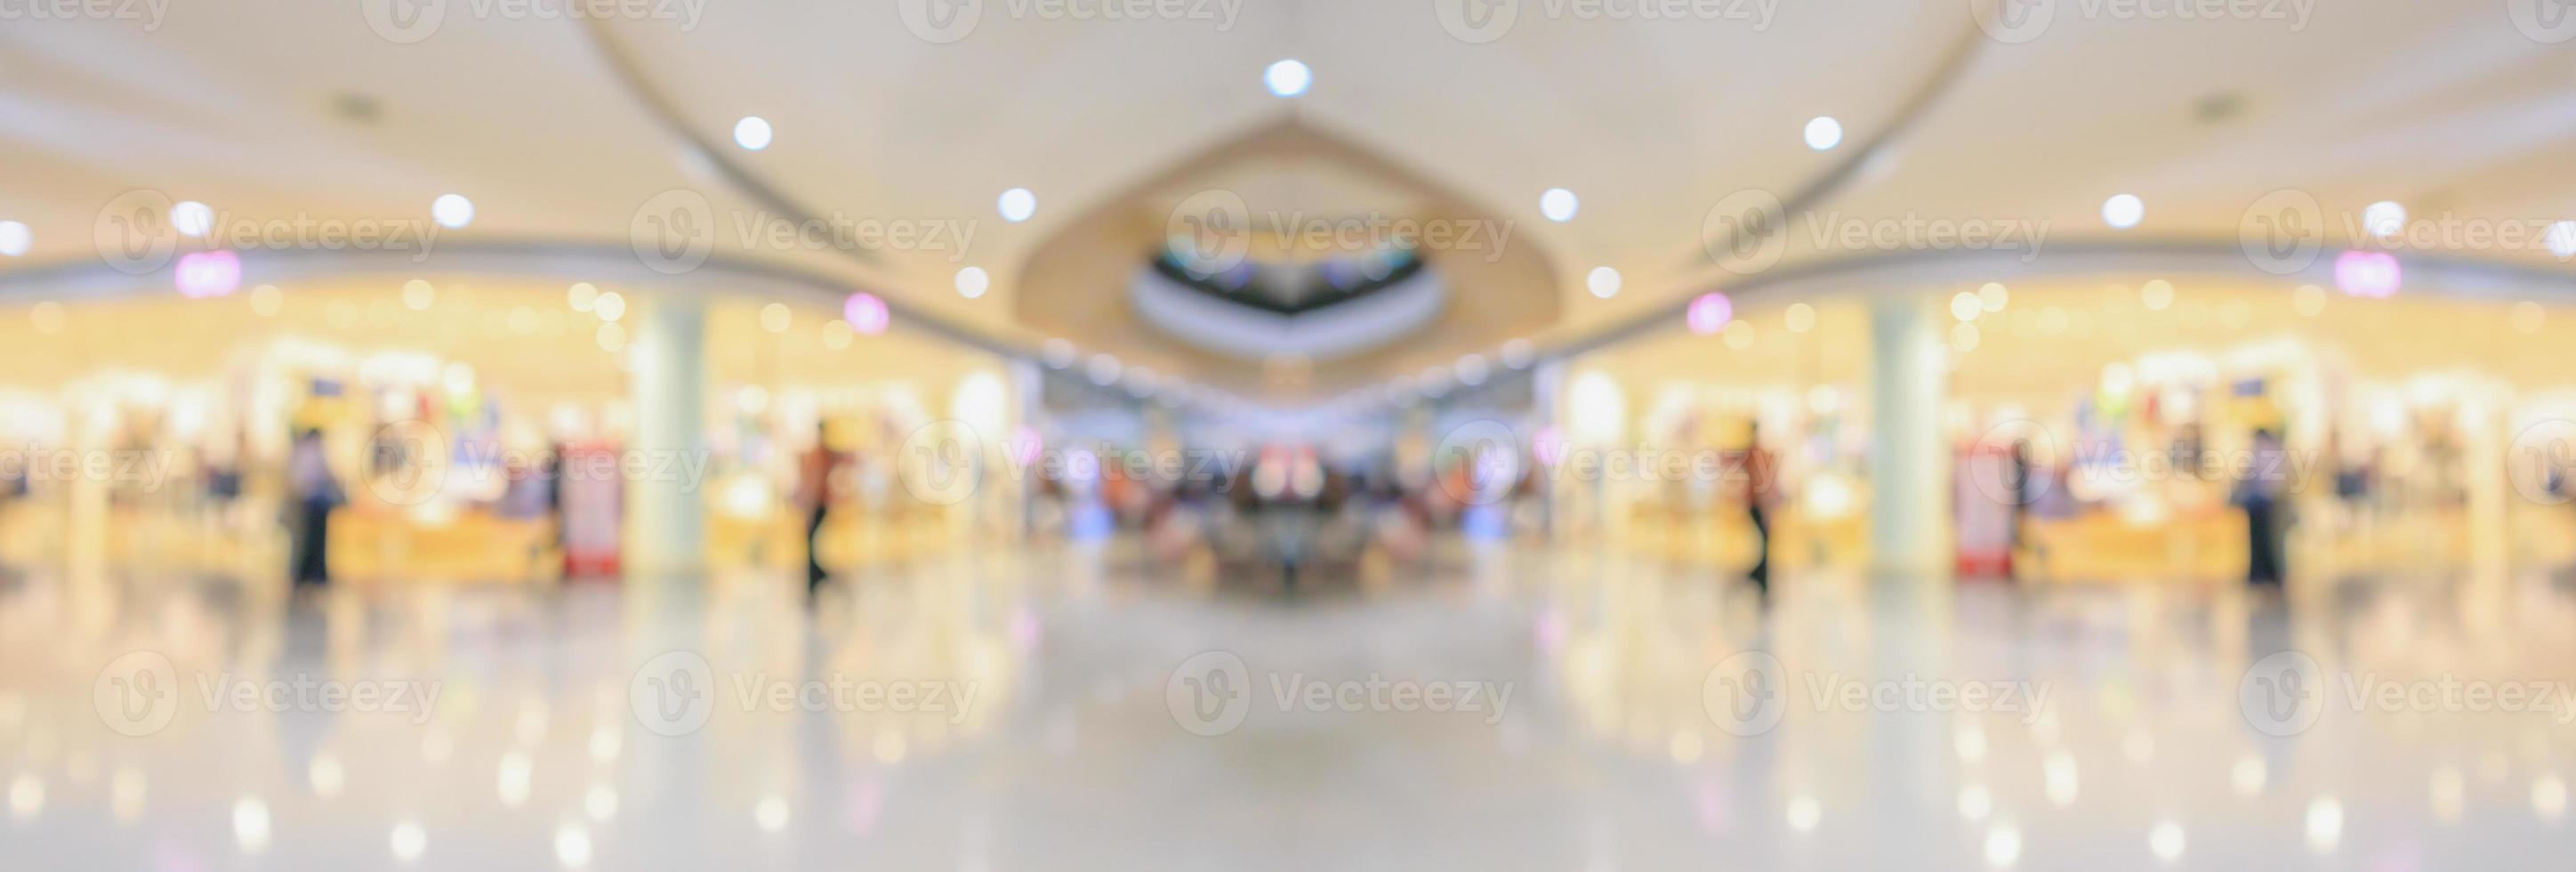 abstrato borrão fundo interior de shopping moderno foto